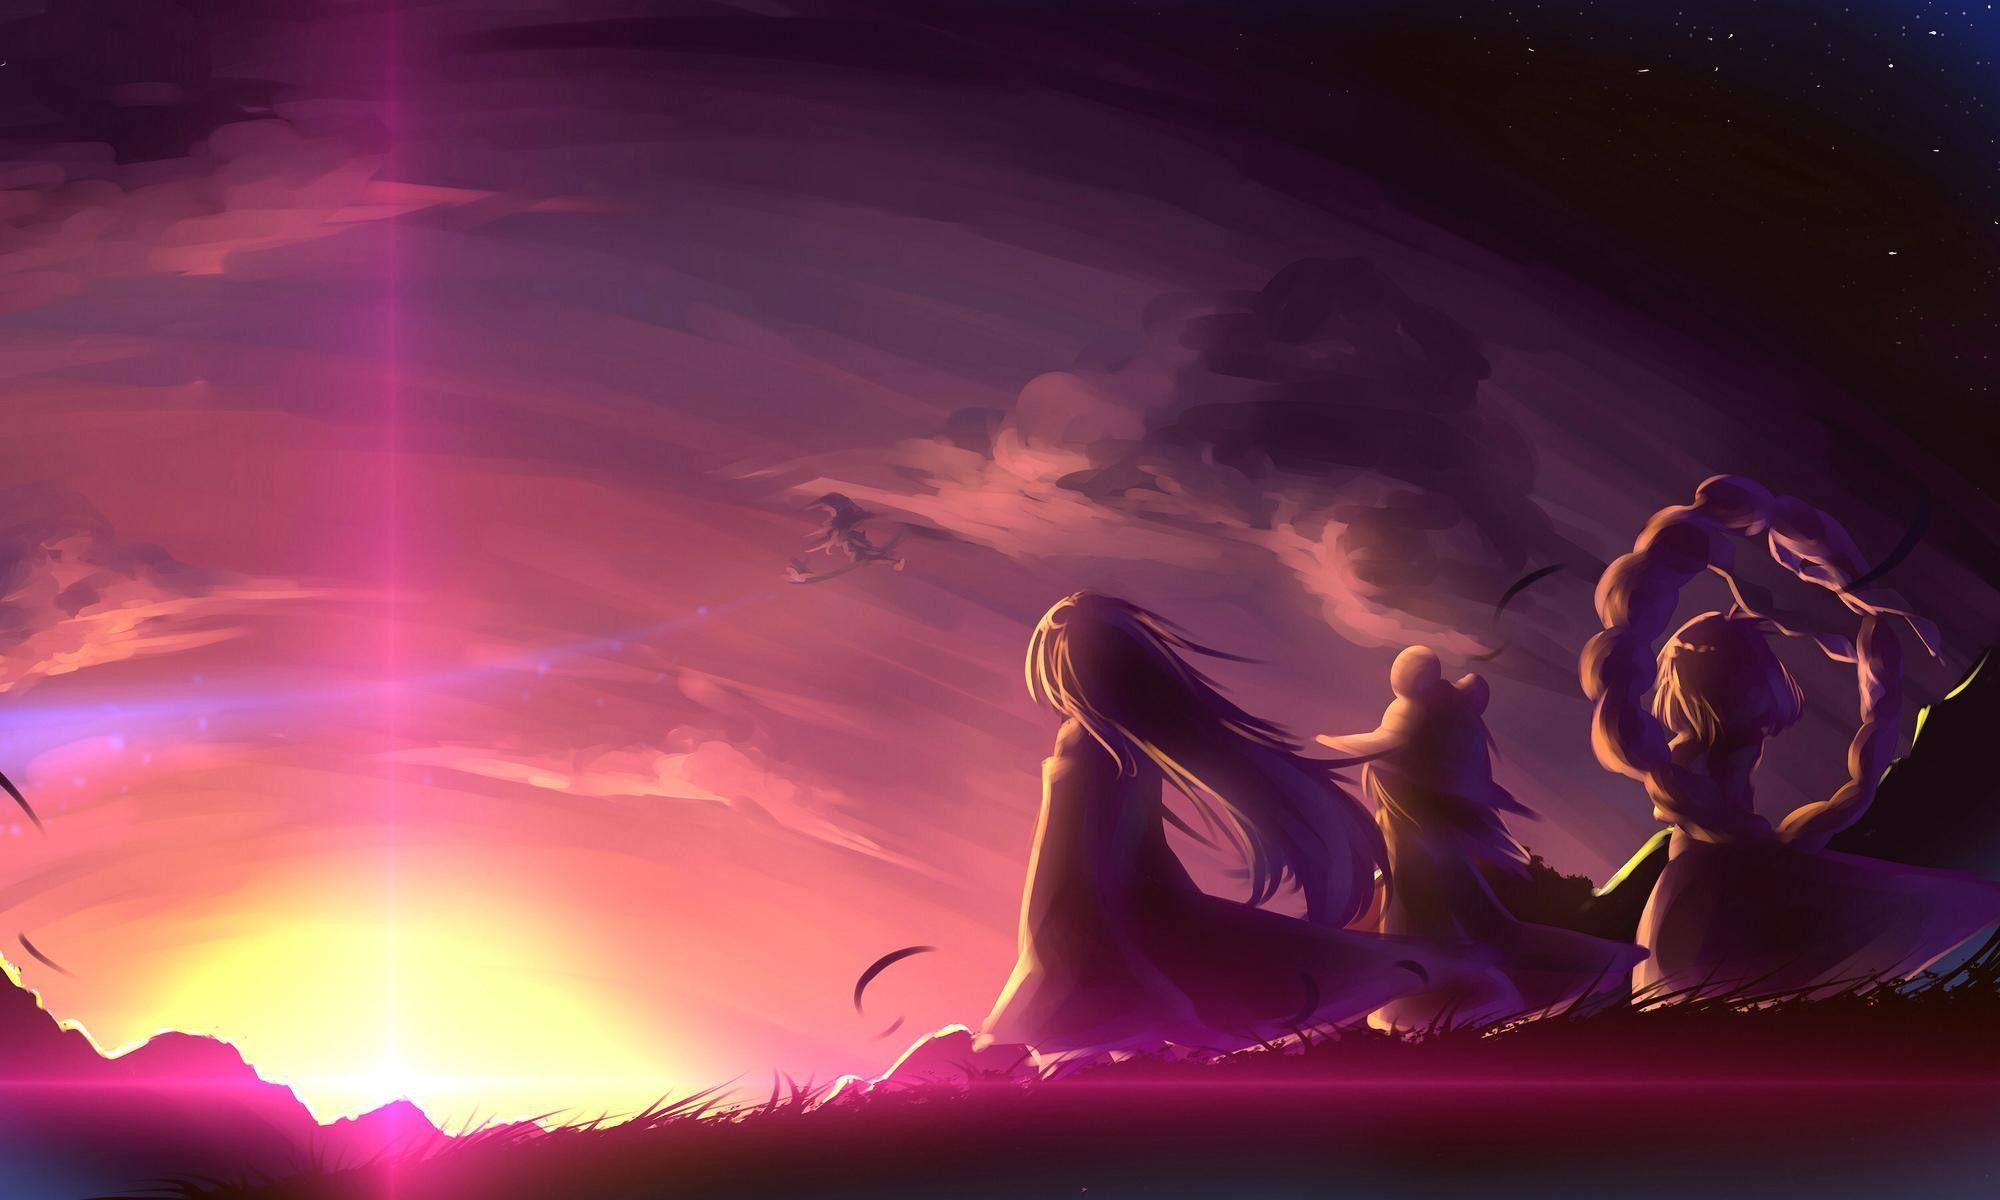 Anime Sunset Wallpapers Top Những Hình Ảnh Đẹp